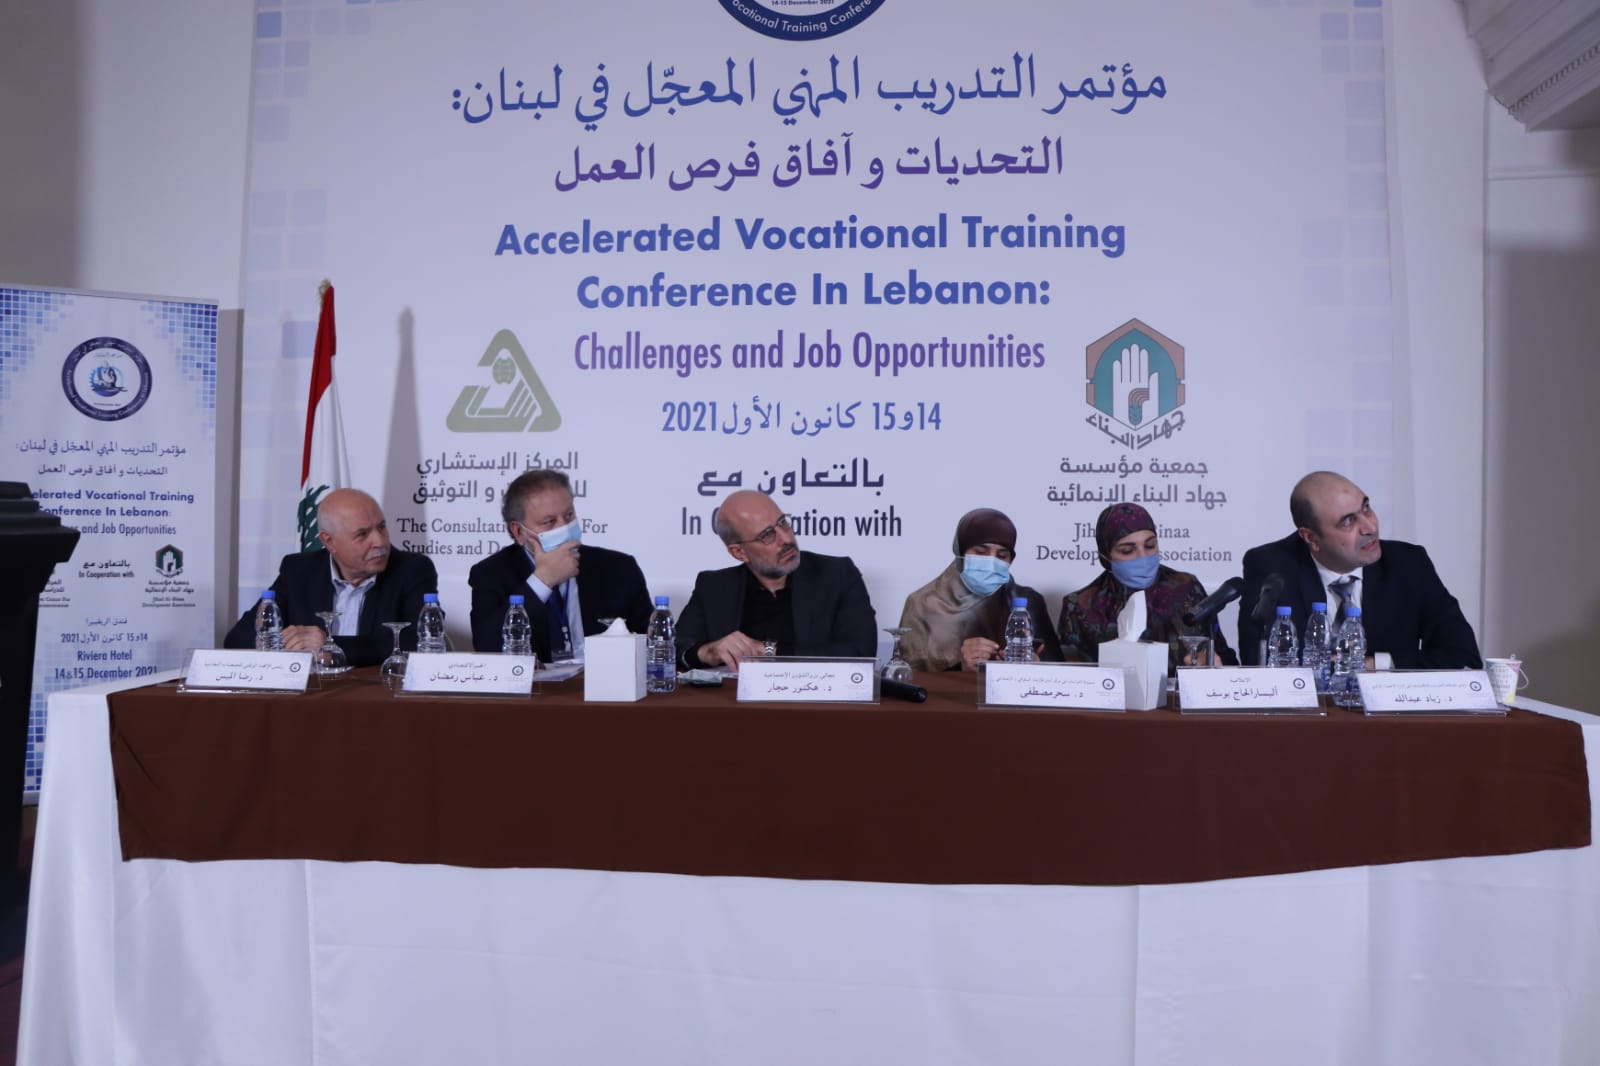 مؤتمر التدريب المهني المعجل في لبنان.. التحديات وآفاق فرص العمل